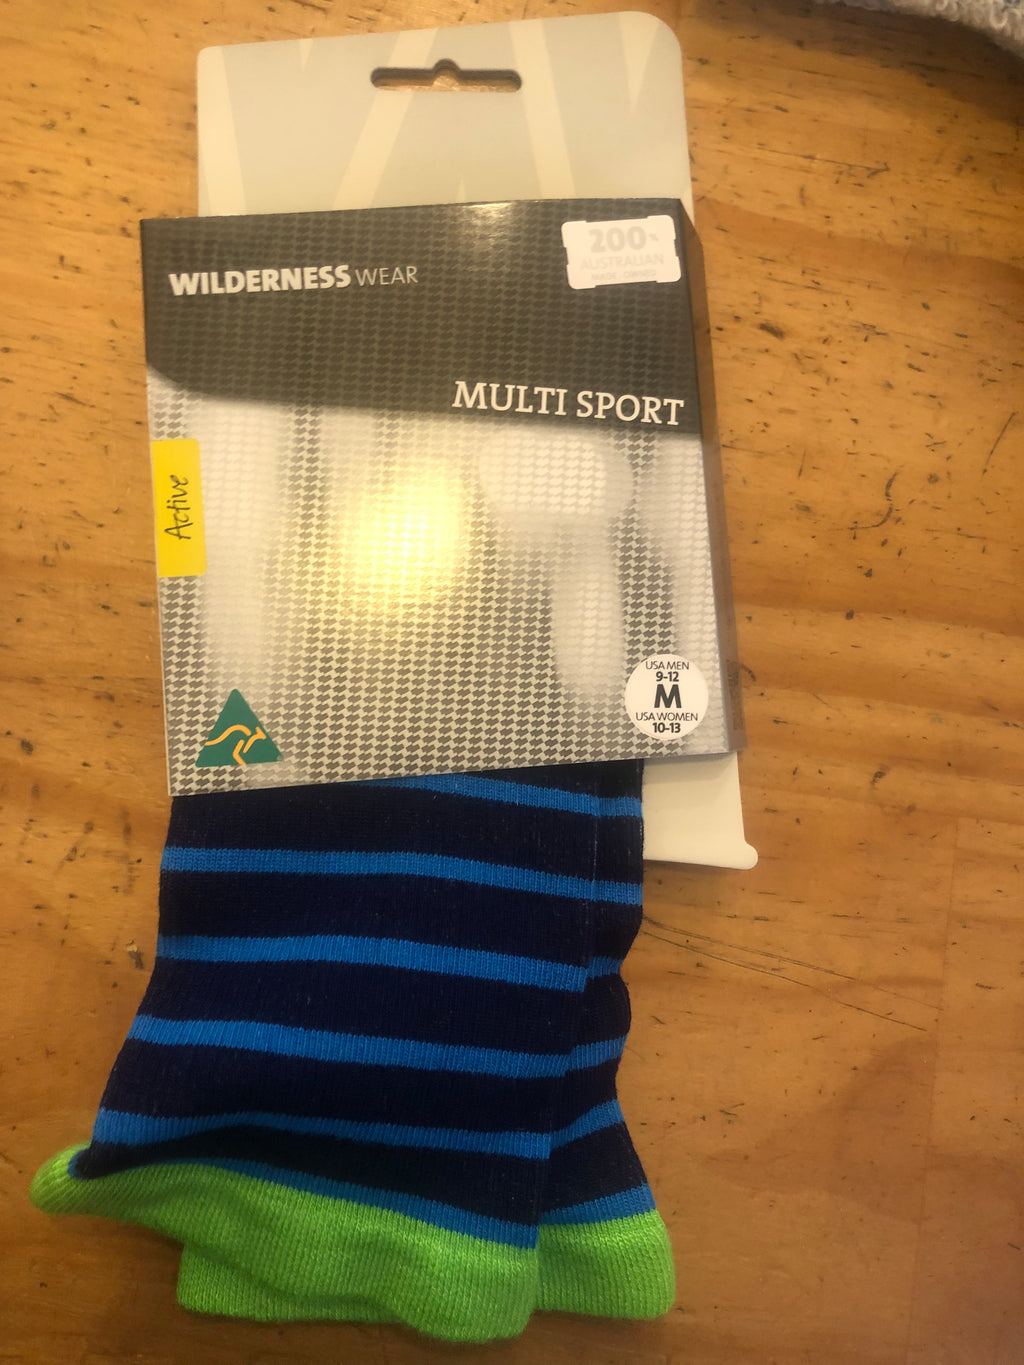 Wilderness Wear Bamboo Multi Sport Socks